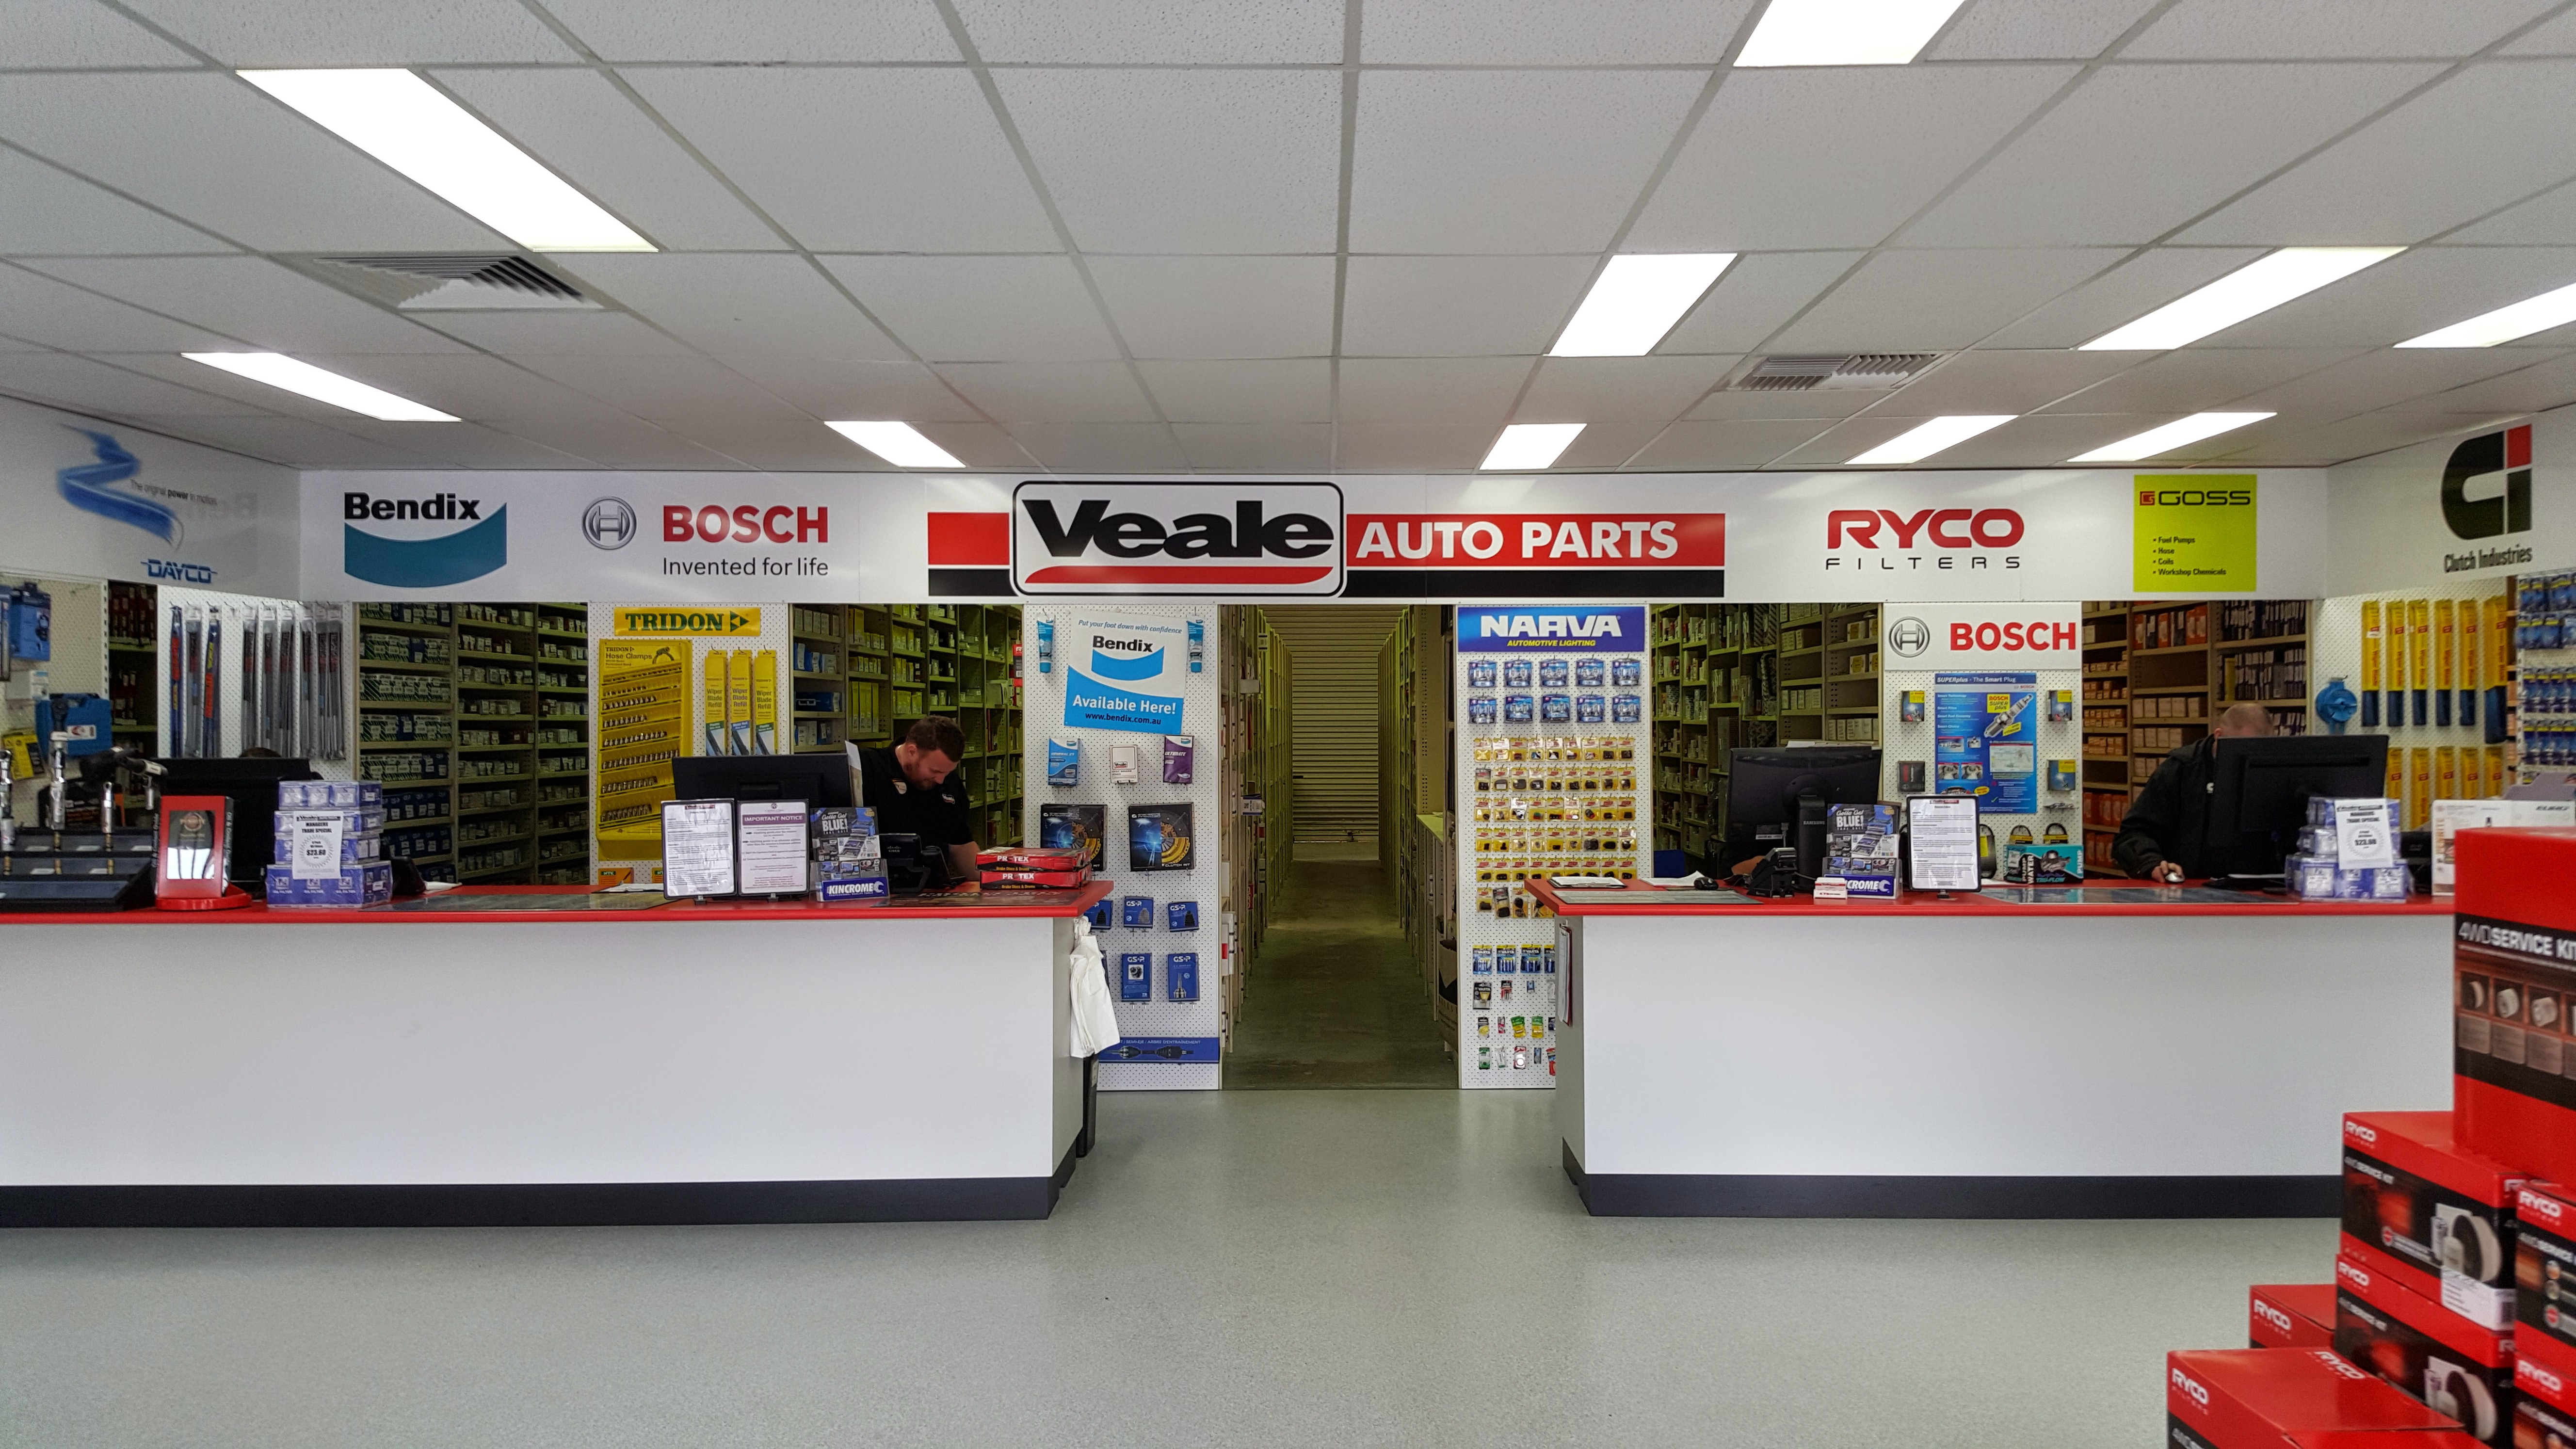 Veale Auto Parts Store